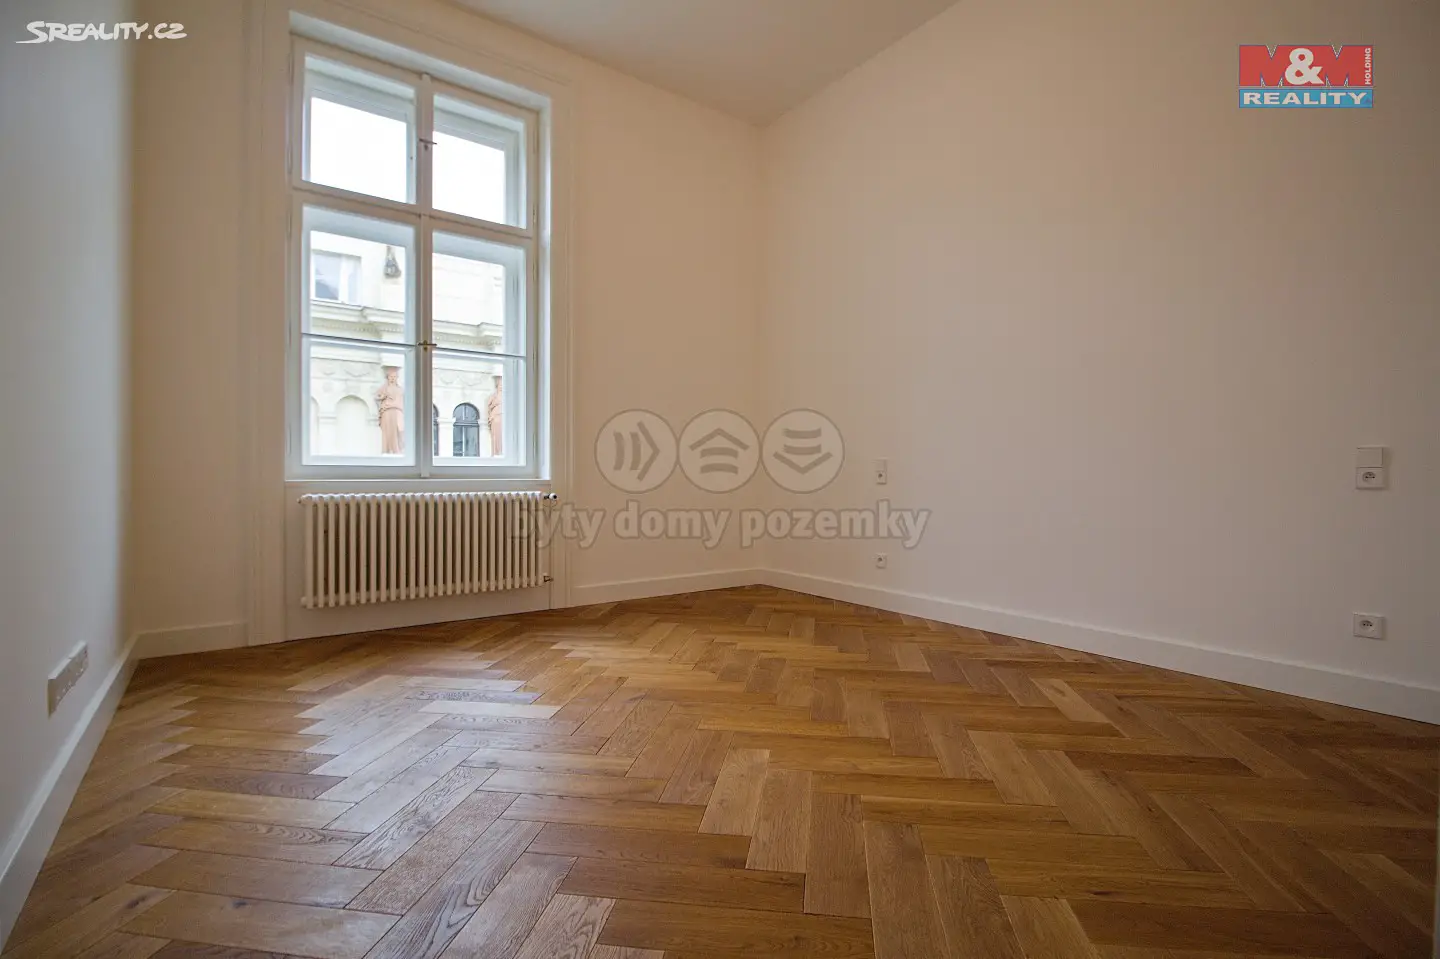 Prodej bytu 2+kk 75 m², Praha 1 - Nové Město